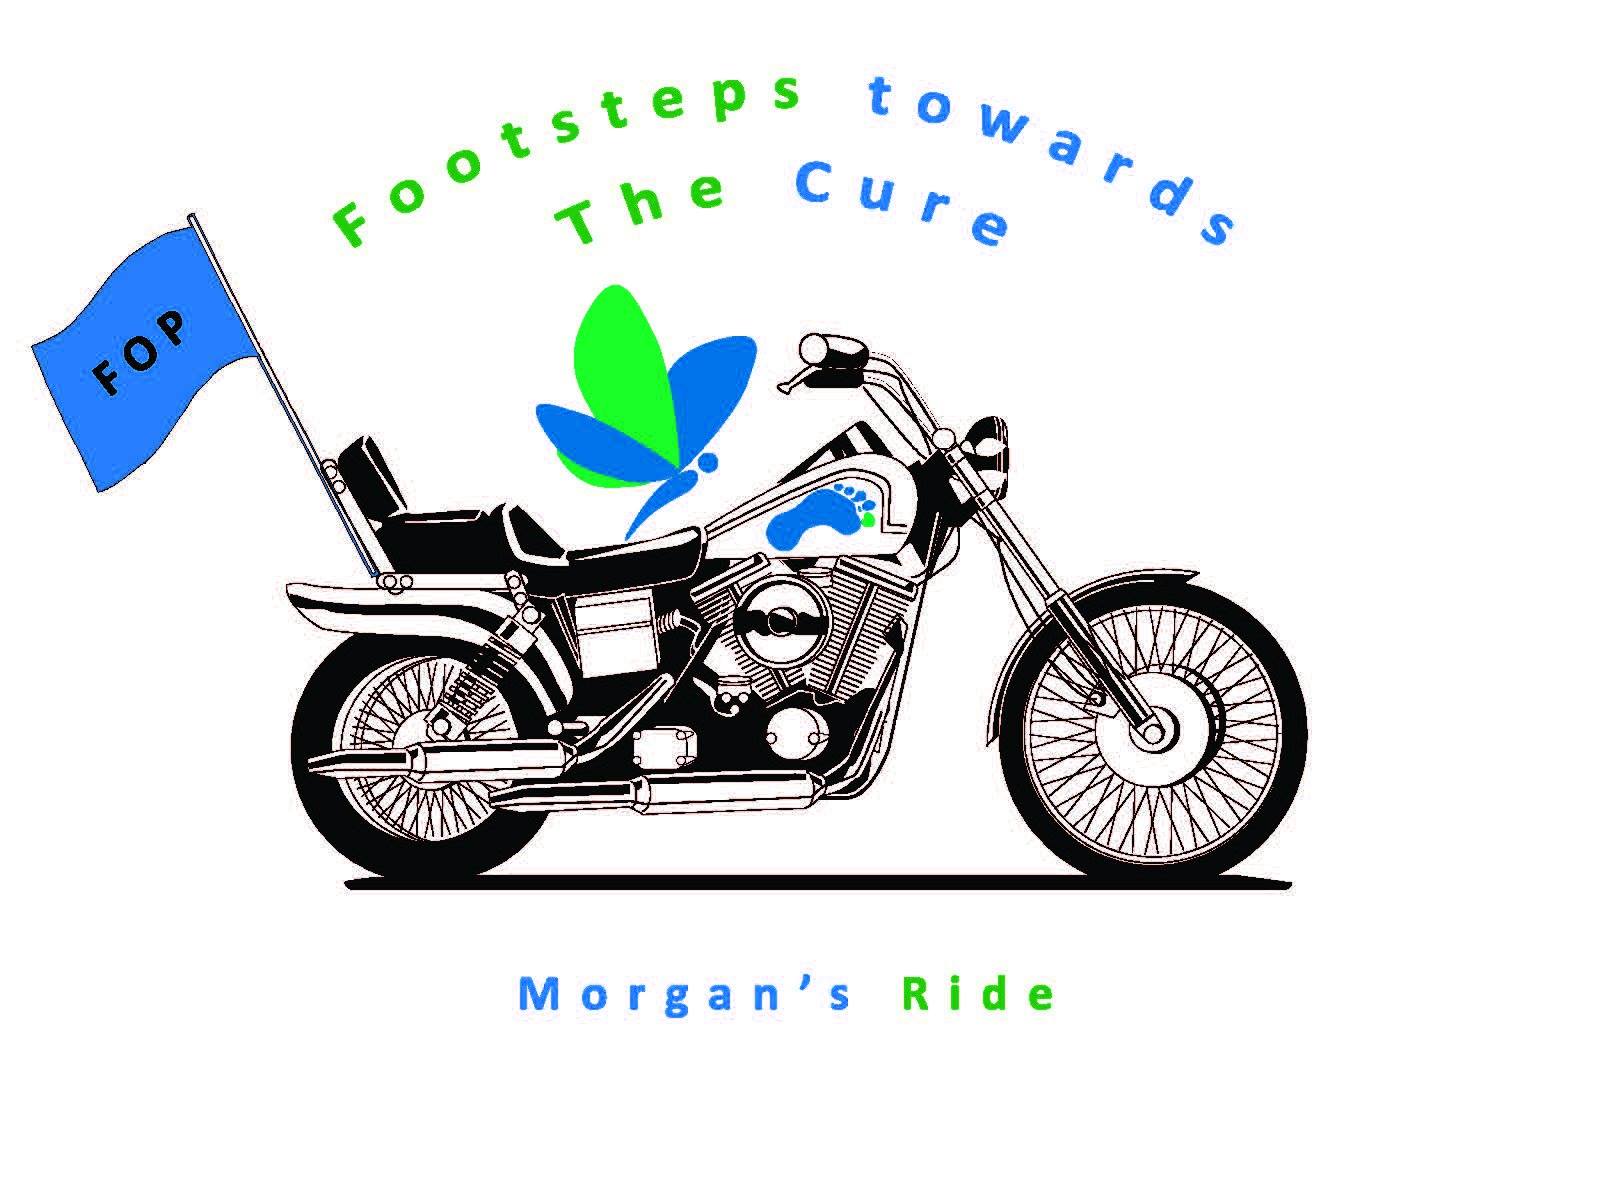 7th Annual Morgan's Ride